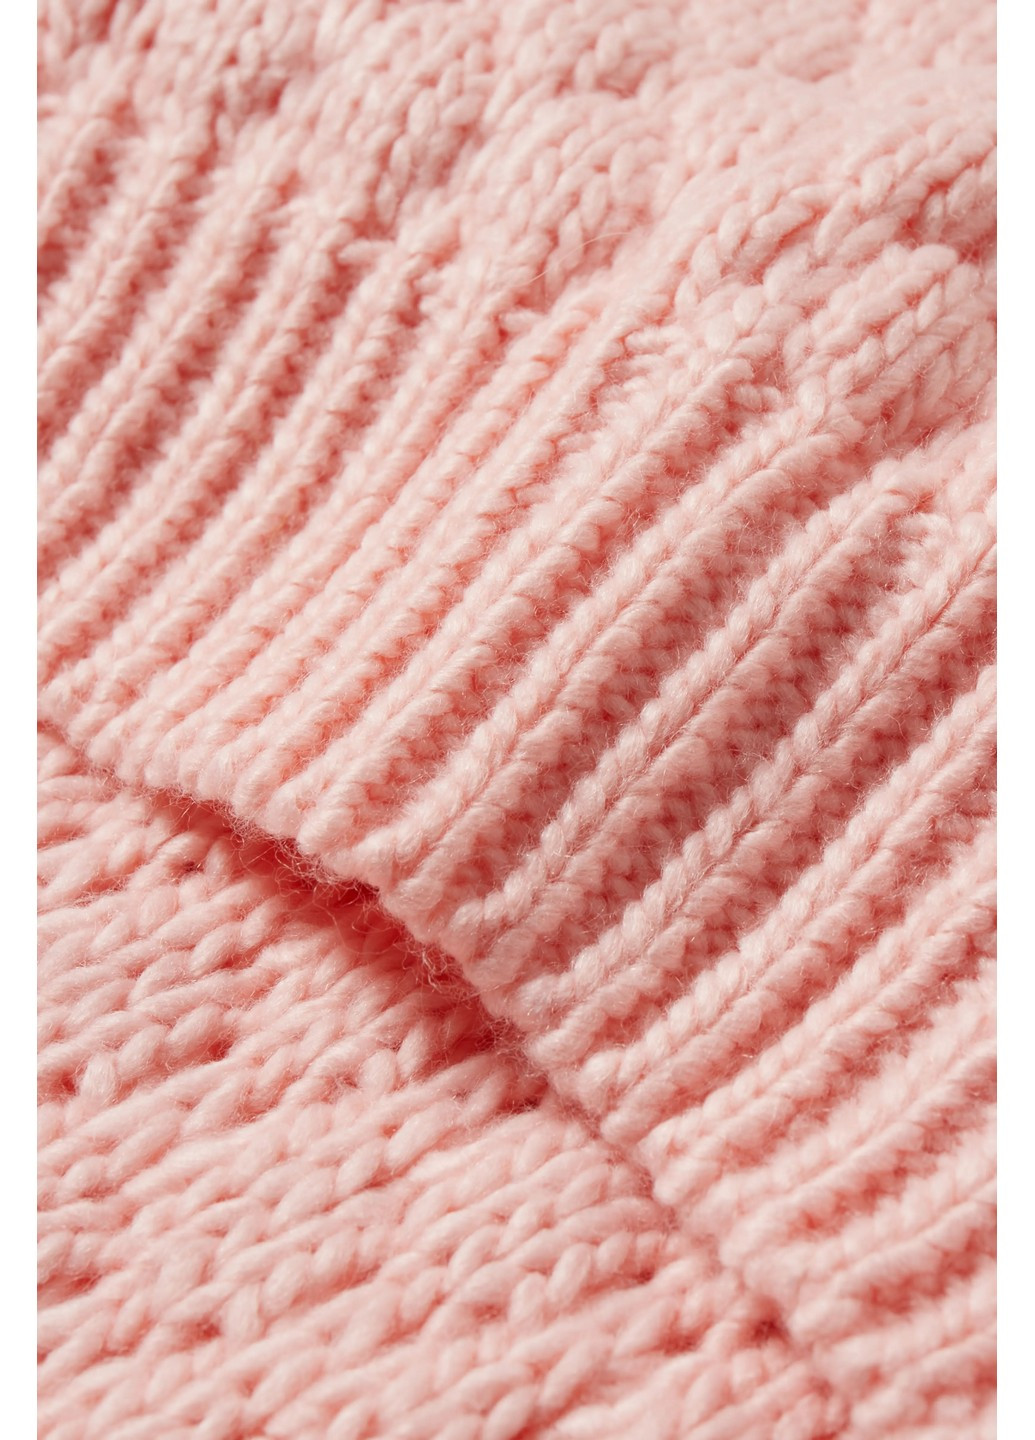 Светло-розовый зимний свитер C&A